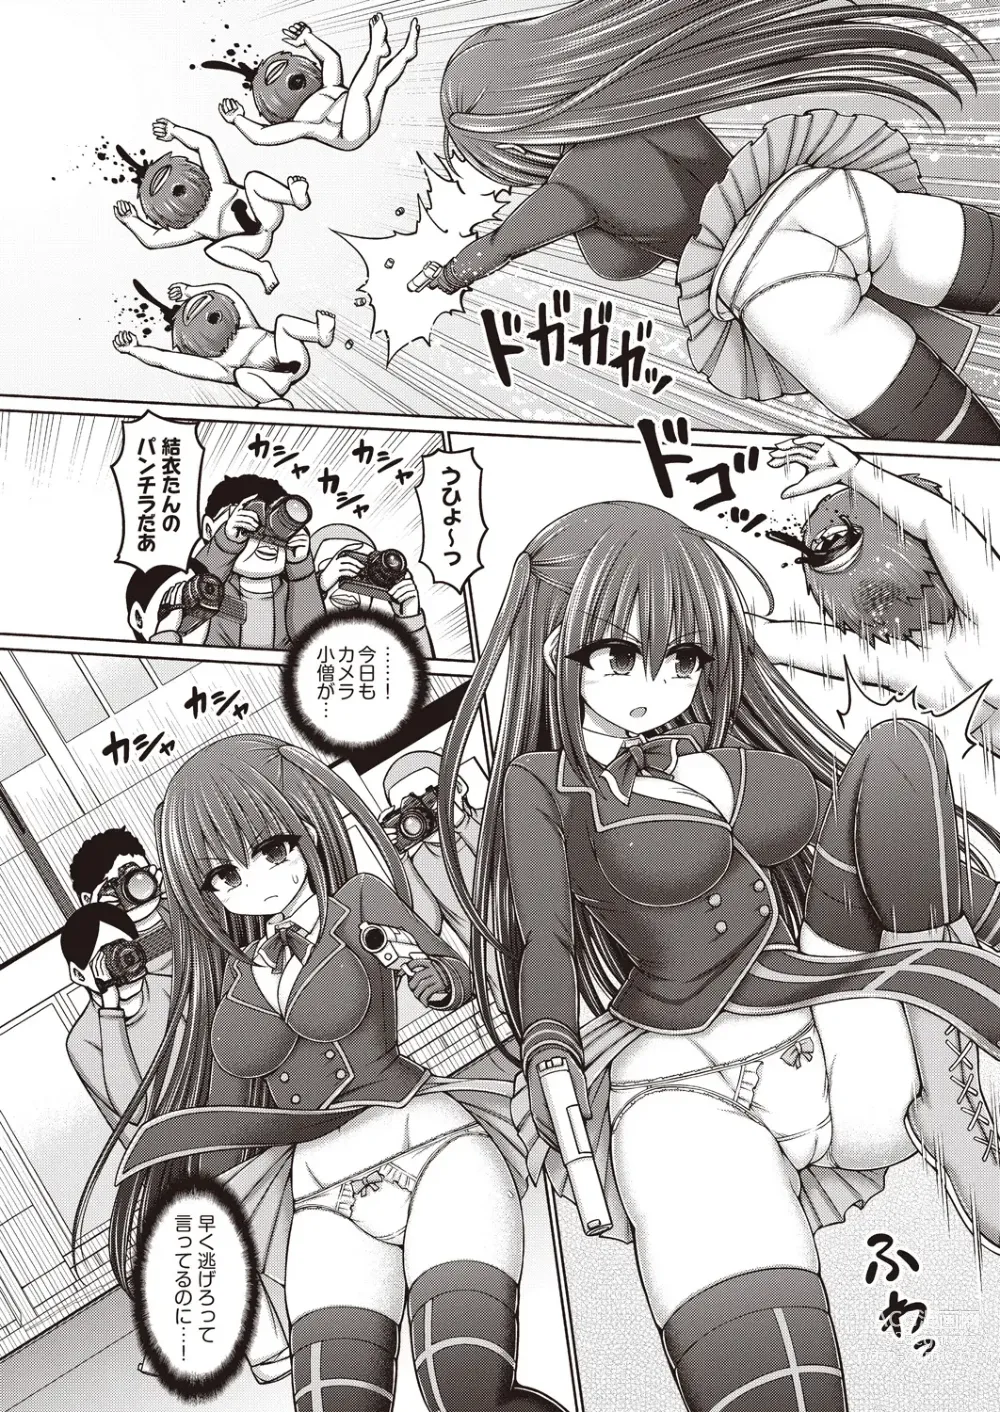 Page 2 of manga Majuu Seijo Yui vs Puroresu Majin Zenpen